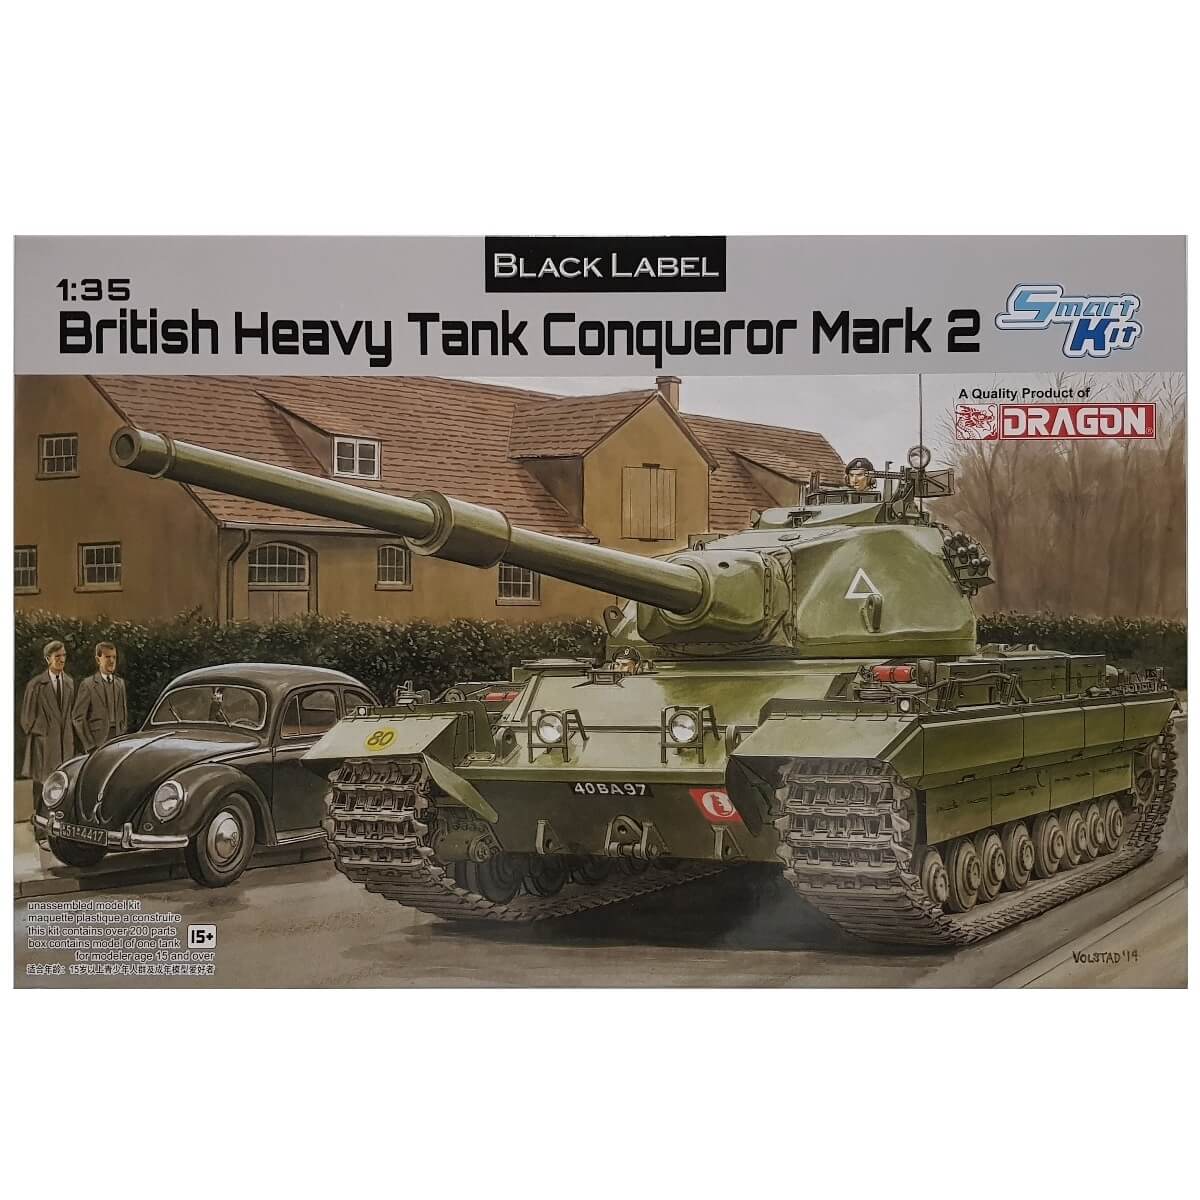 1:35 British Heavy Tank Conqueror Mark 2 - DRAGON